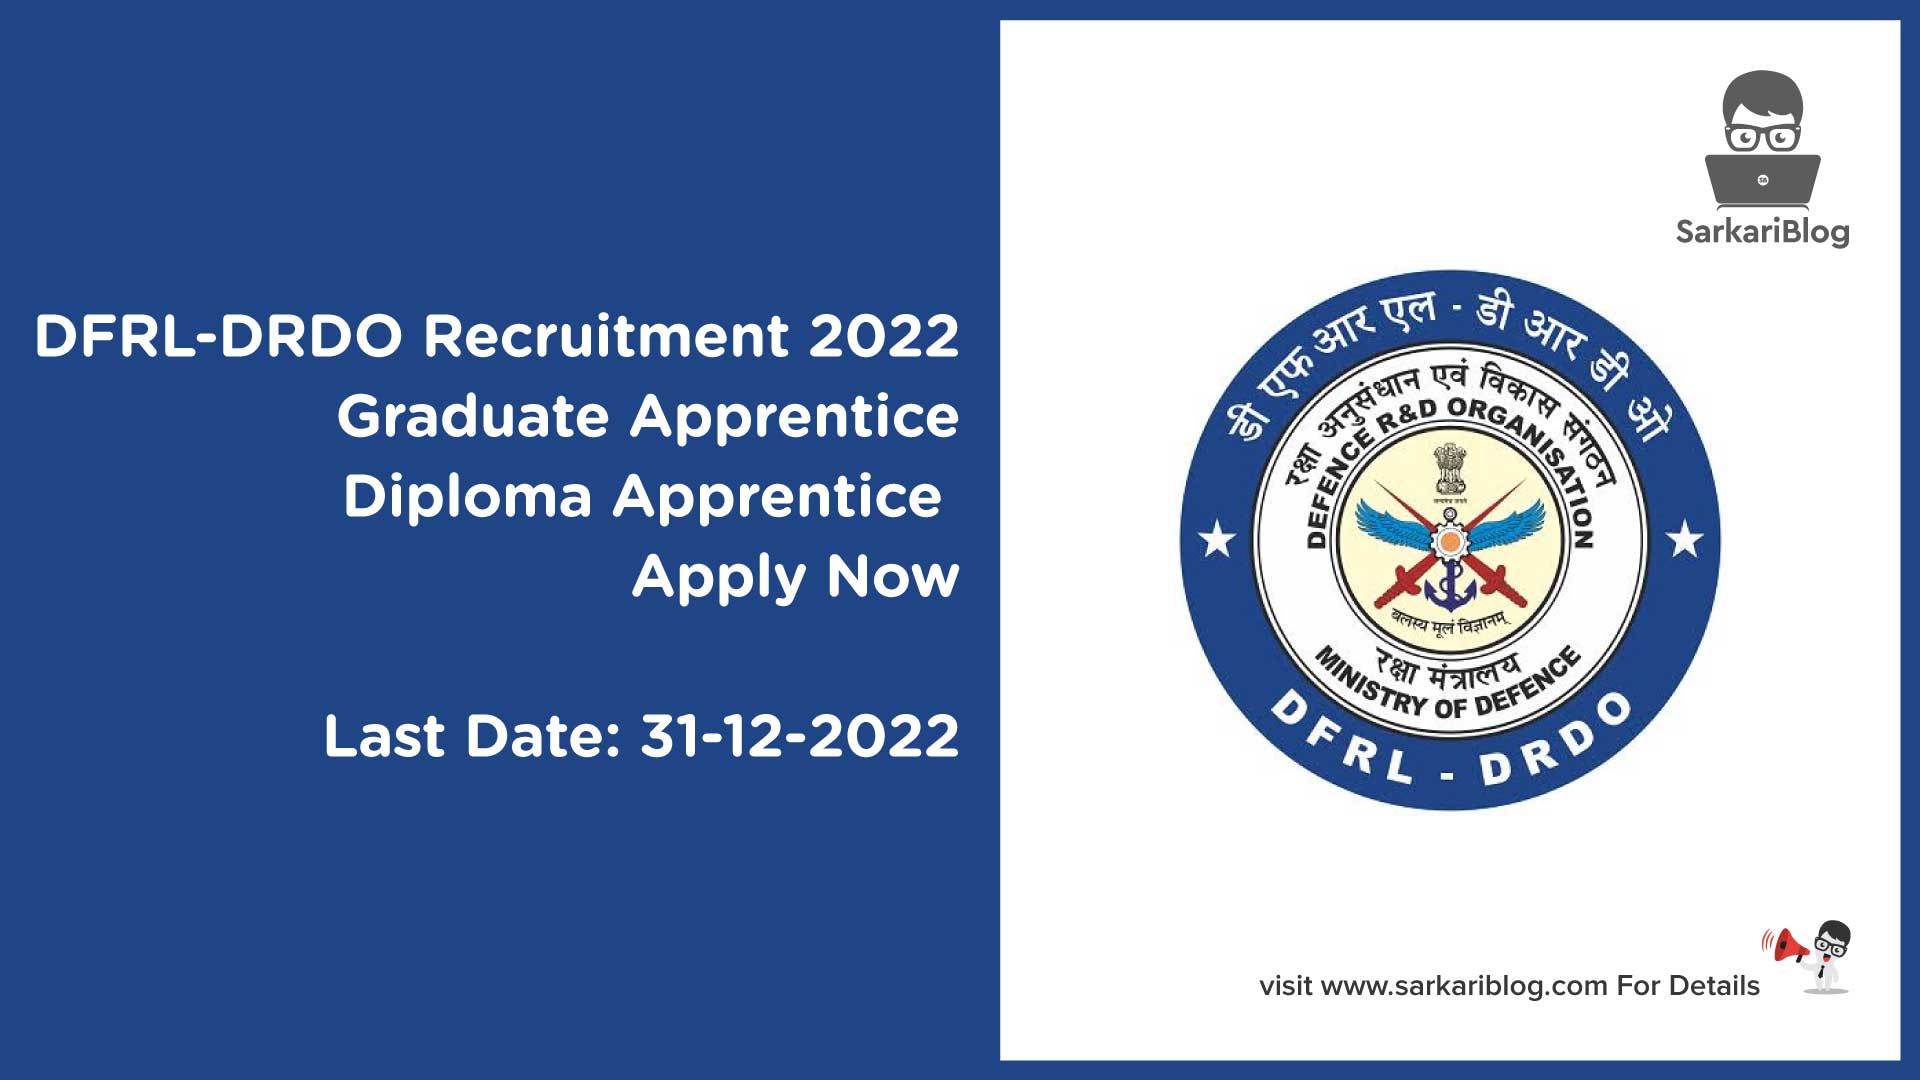 DFRL-DRDO Apprentice Recruitment 2022